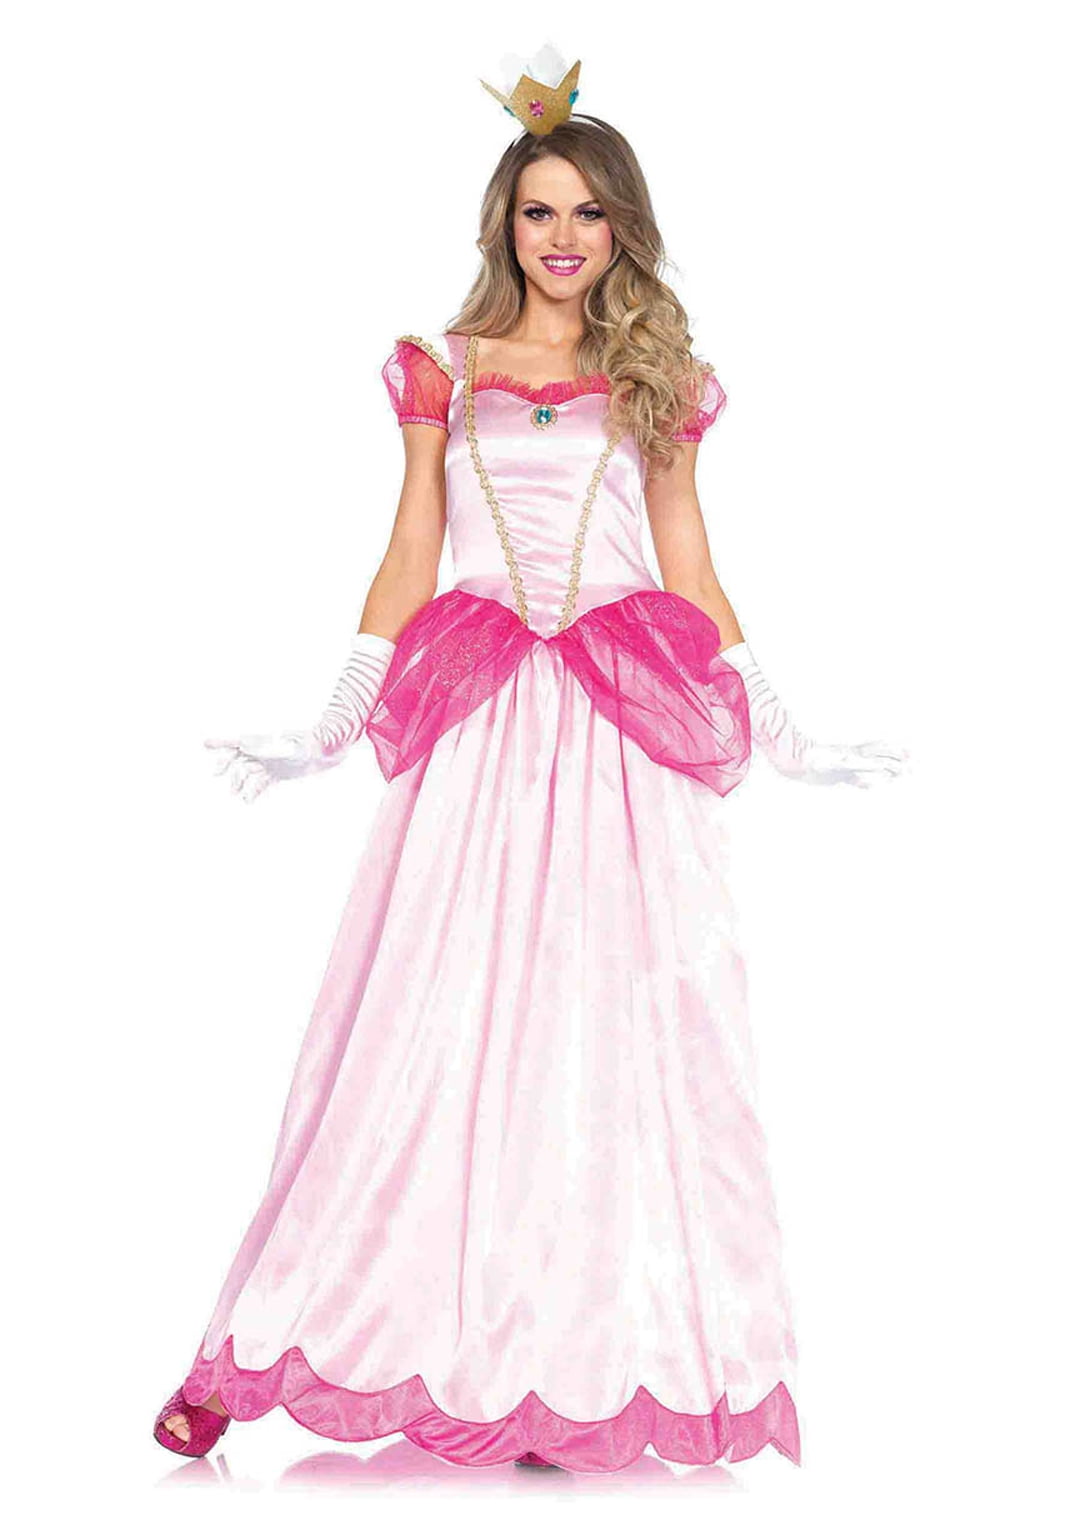 Pink Princess Renaissance Queen Ball Gown Fancy Dress Up Halloween Child Costume 